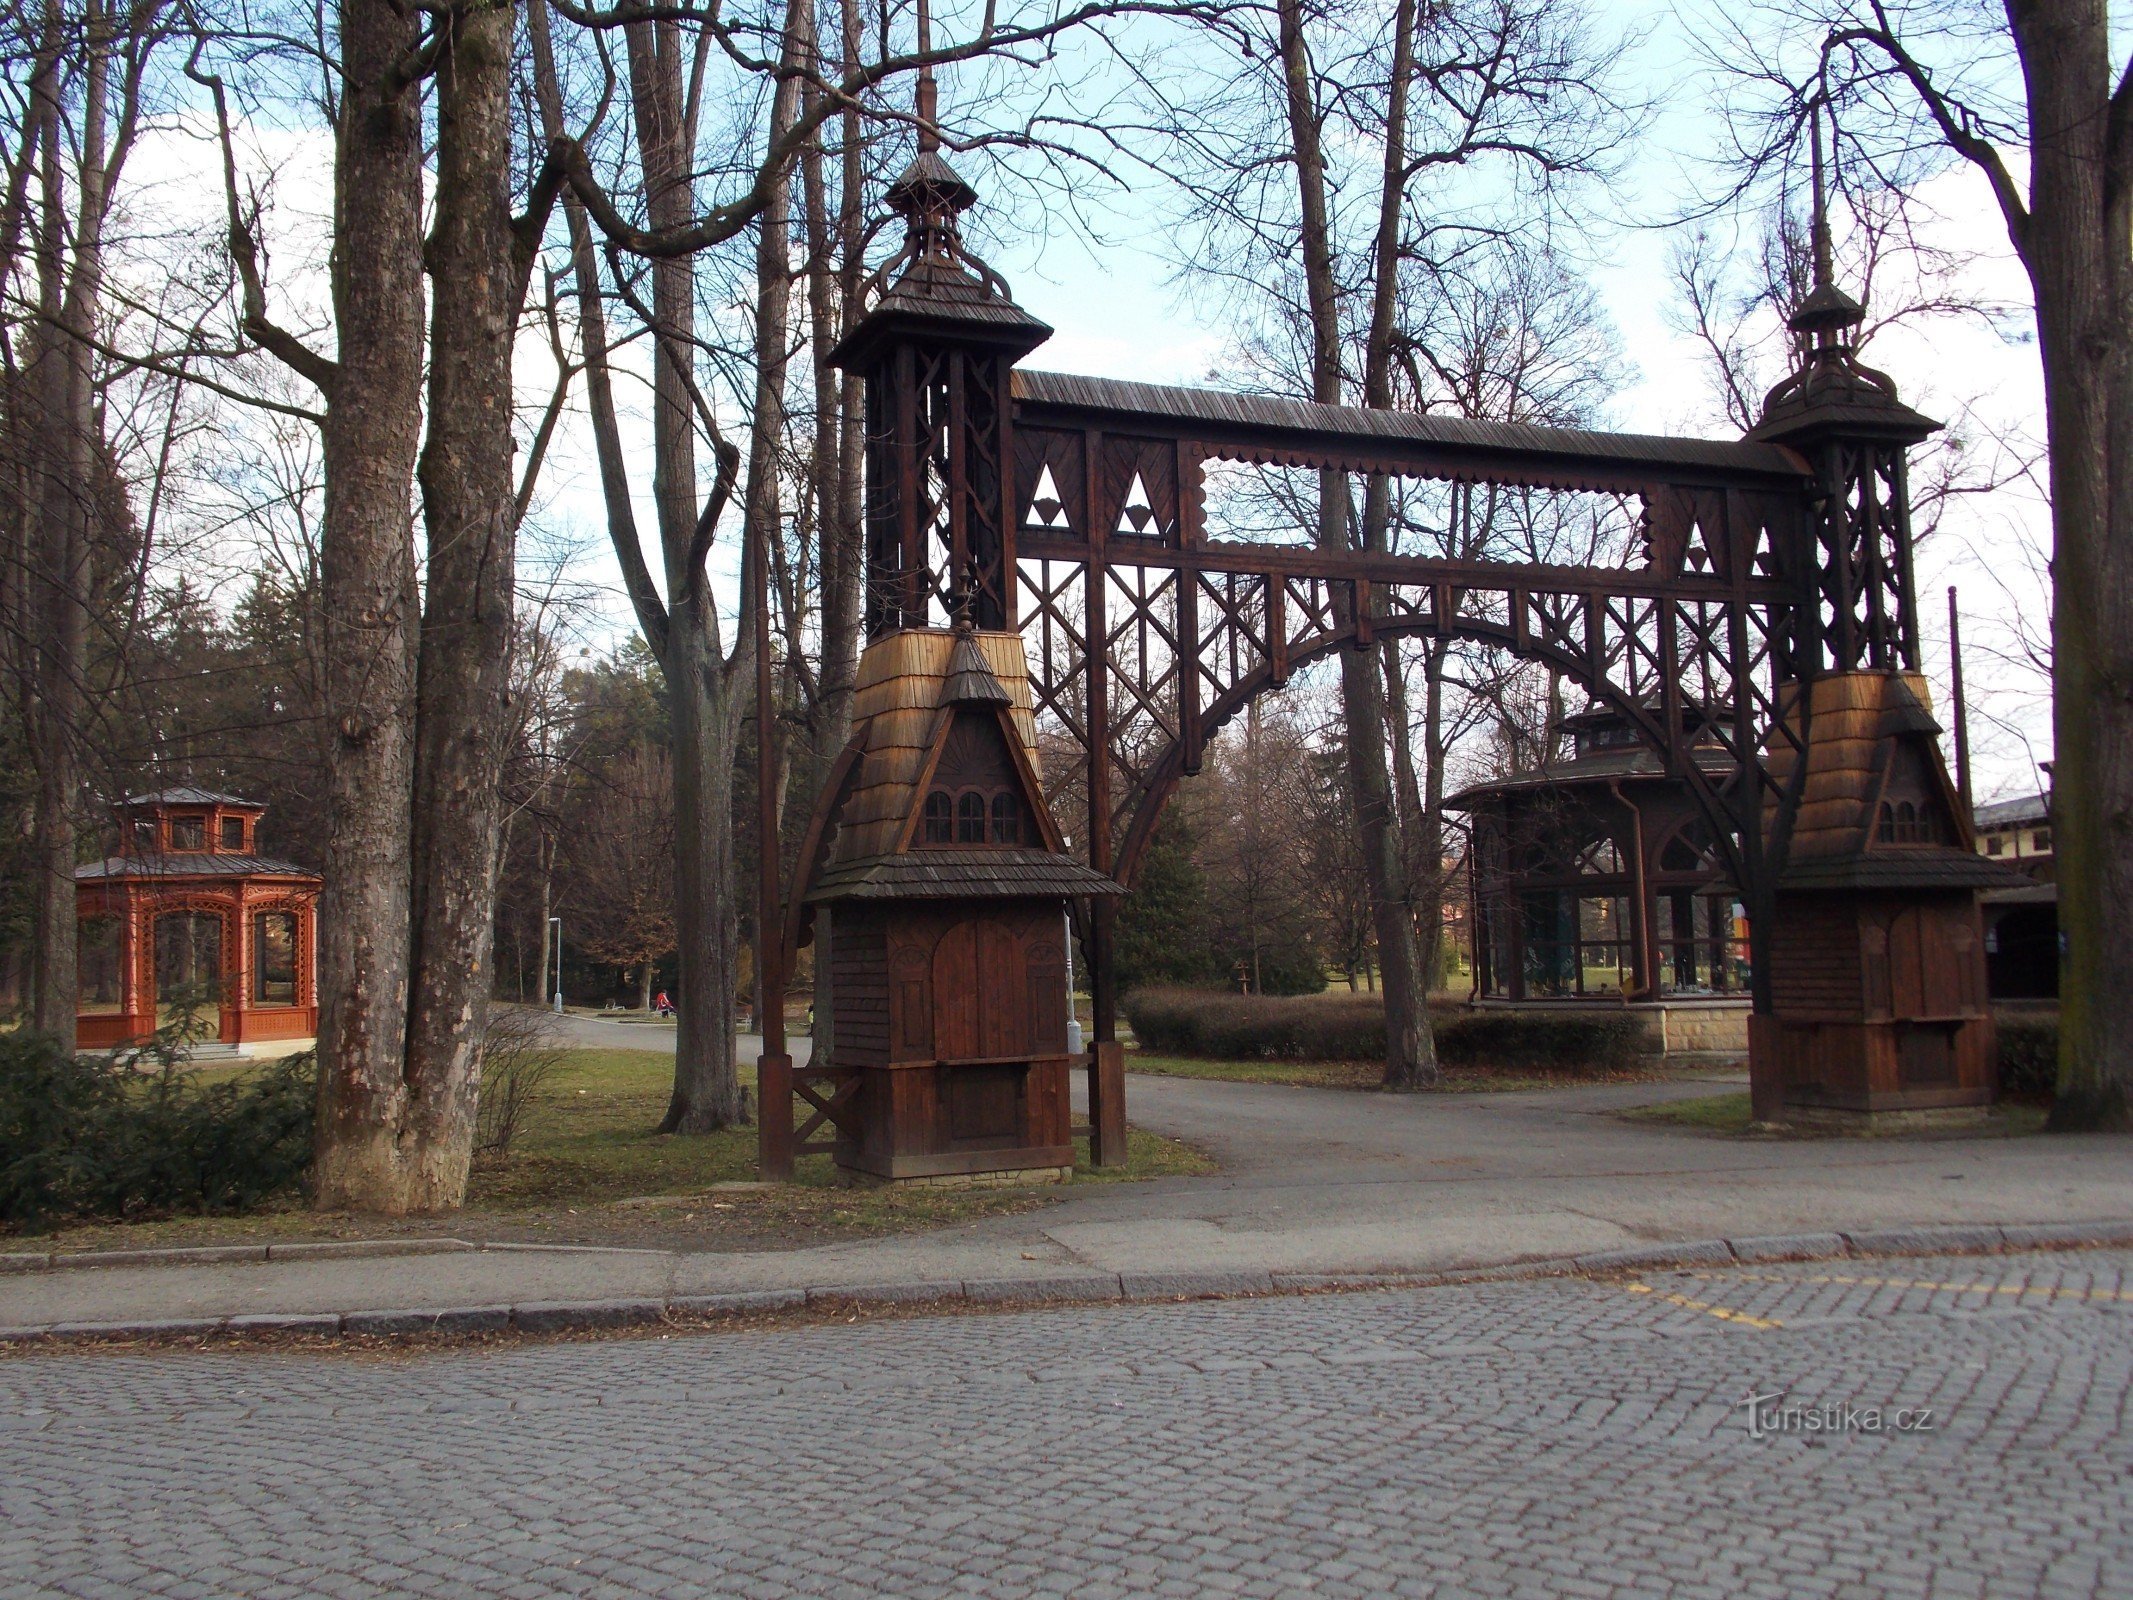 Μια βόλτα στο πάρκο σπα στο Rožnov pod Radhoštěm